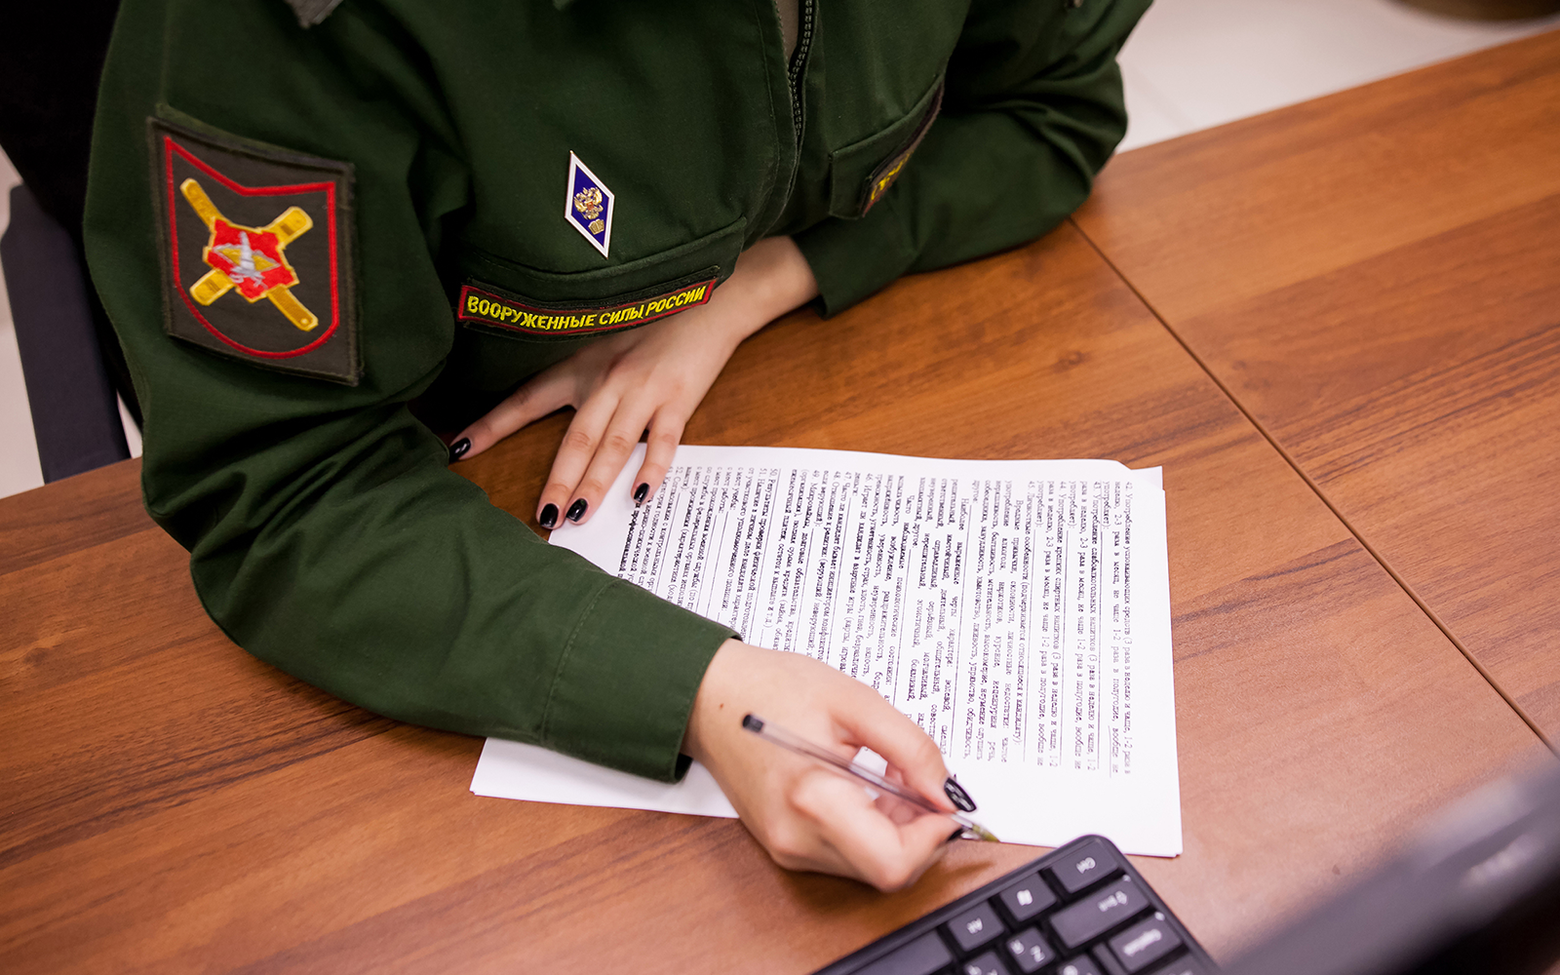 Заявки айтишников на отсрочку от армии принимаются до 11 августа